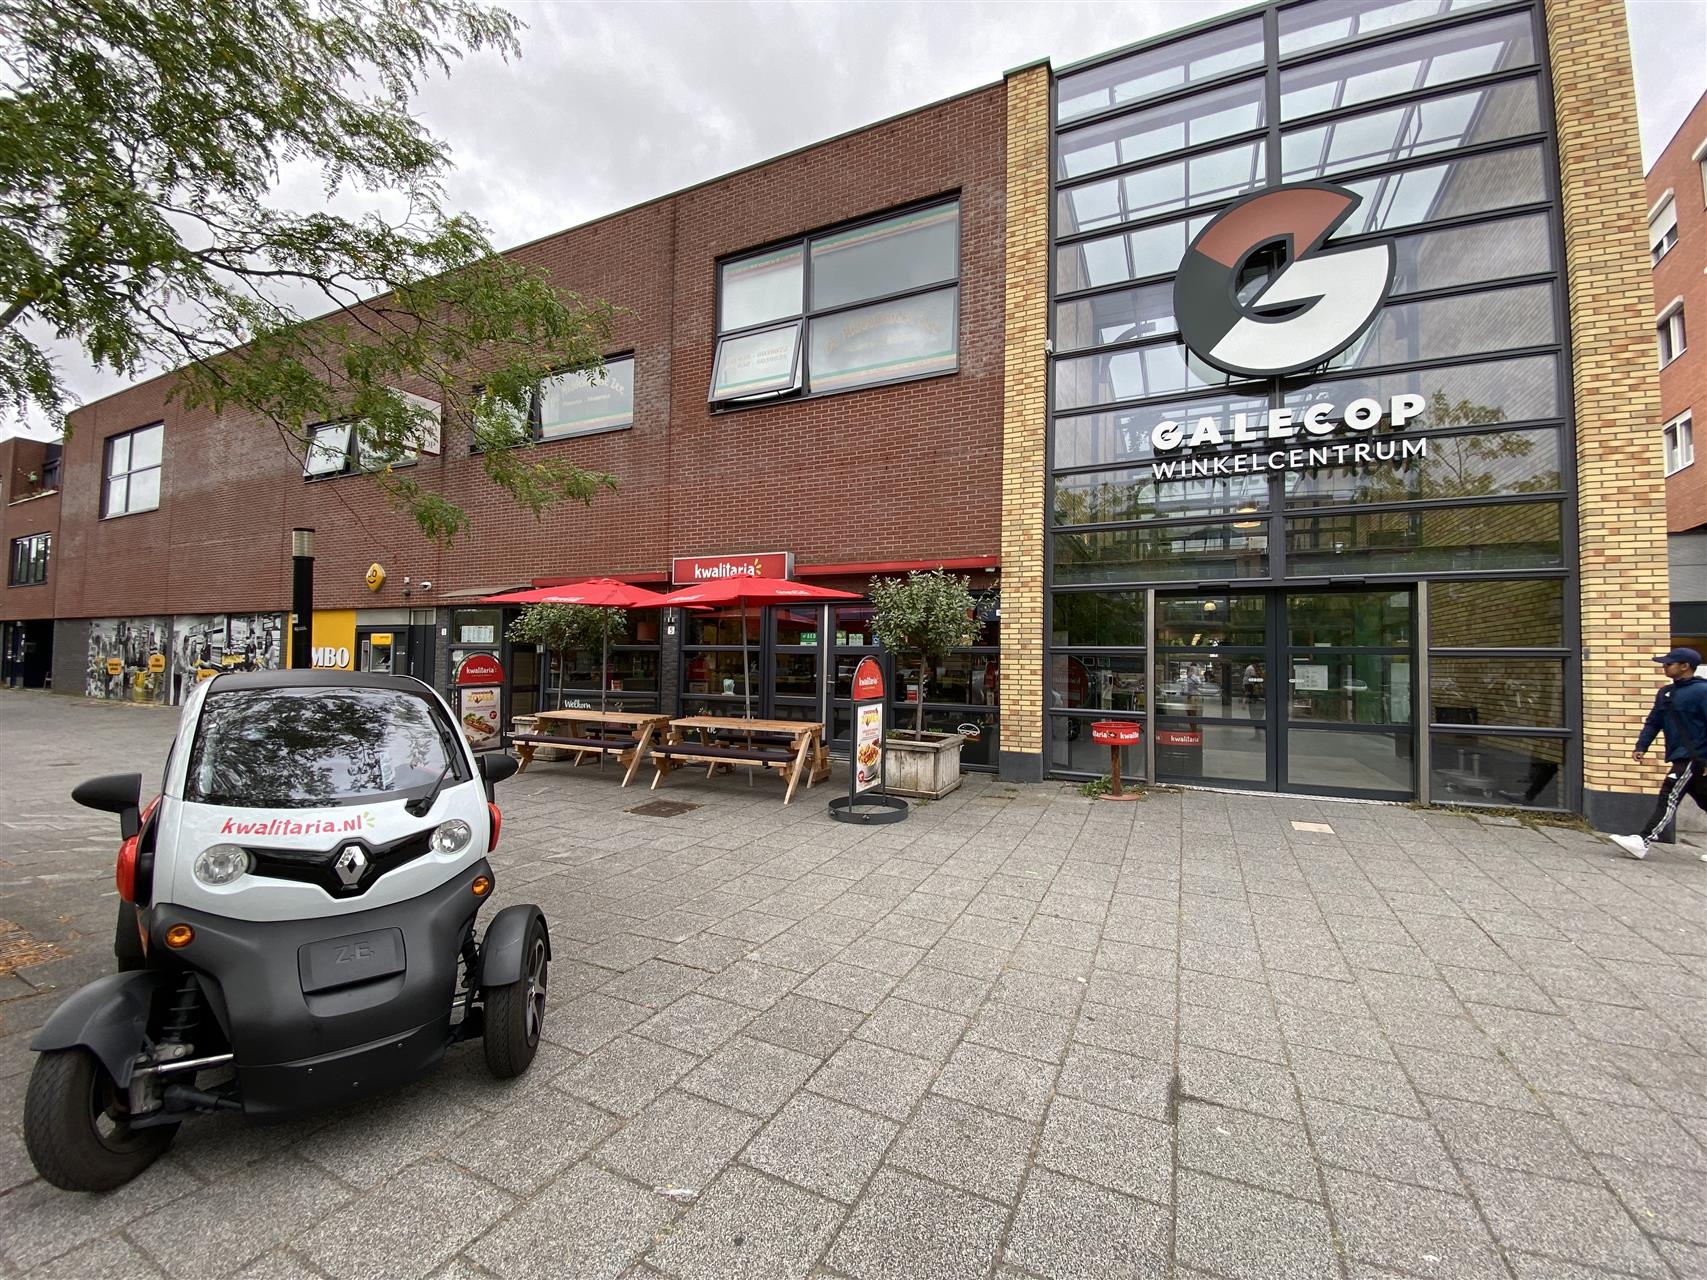 Kwalitaria Nieuwegein Winkelcentrum Galecop